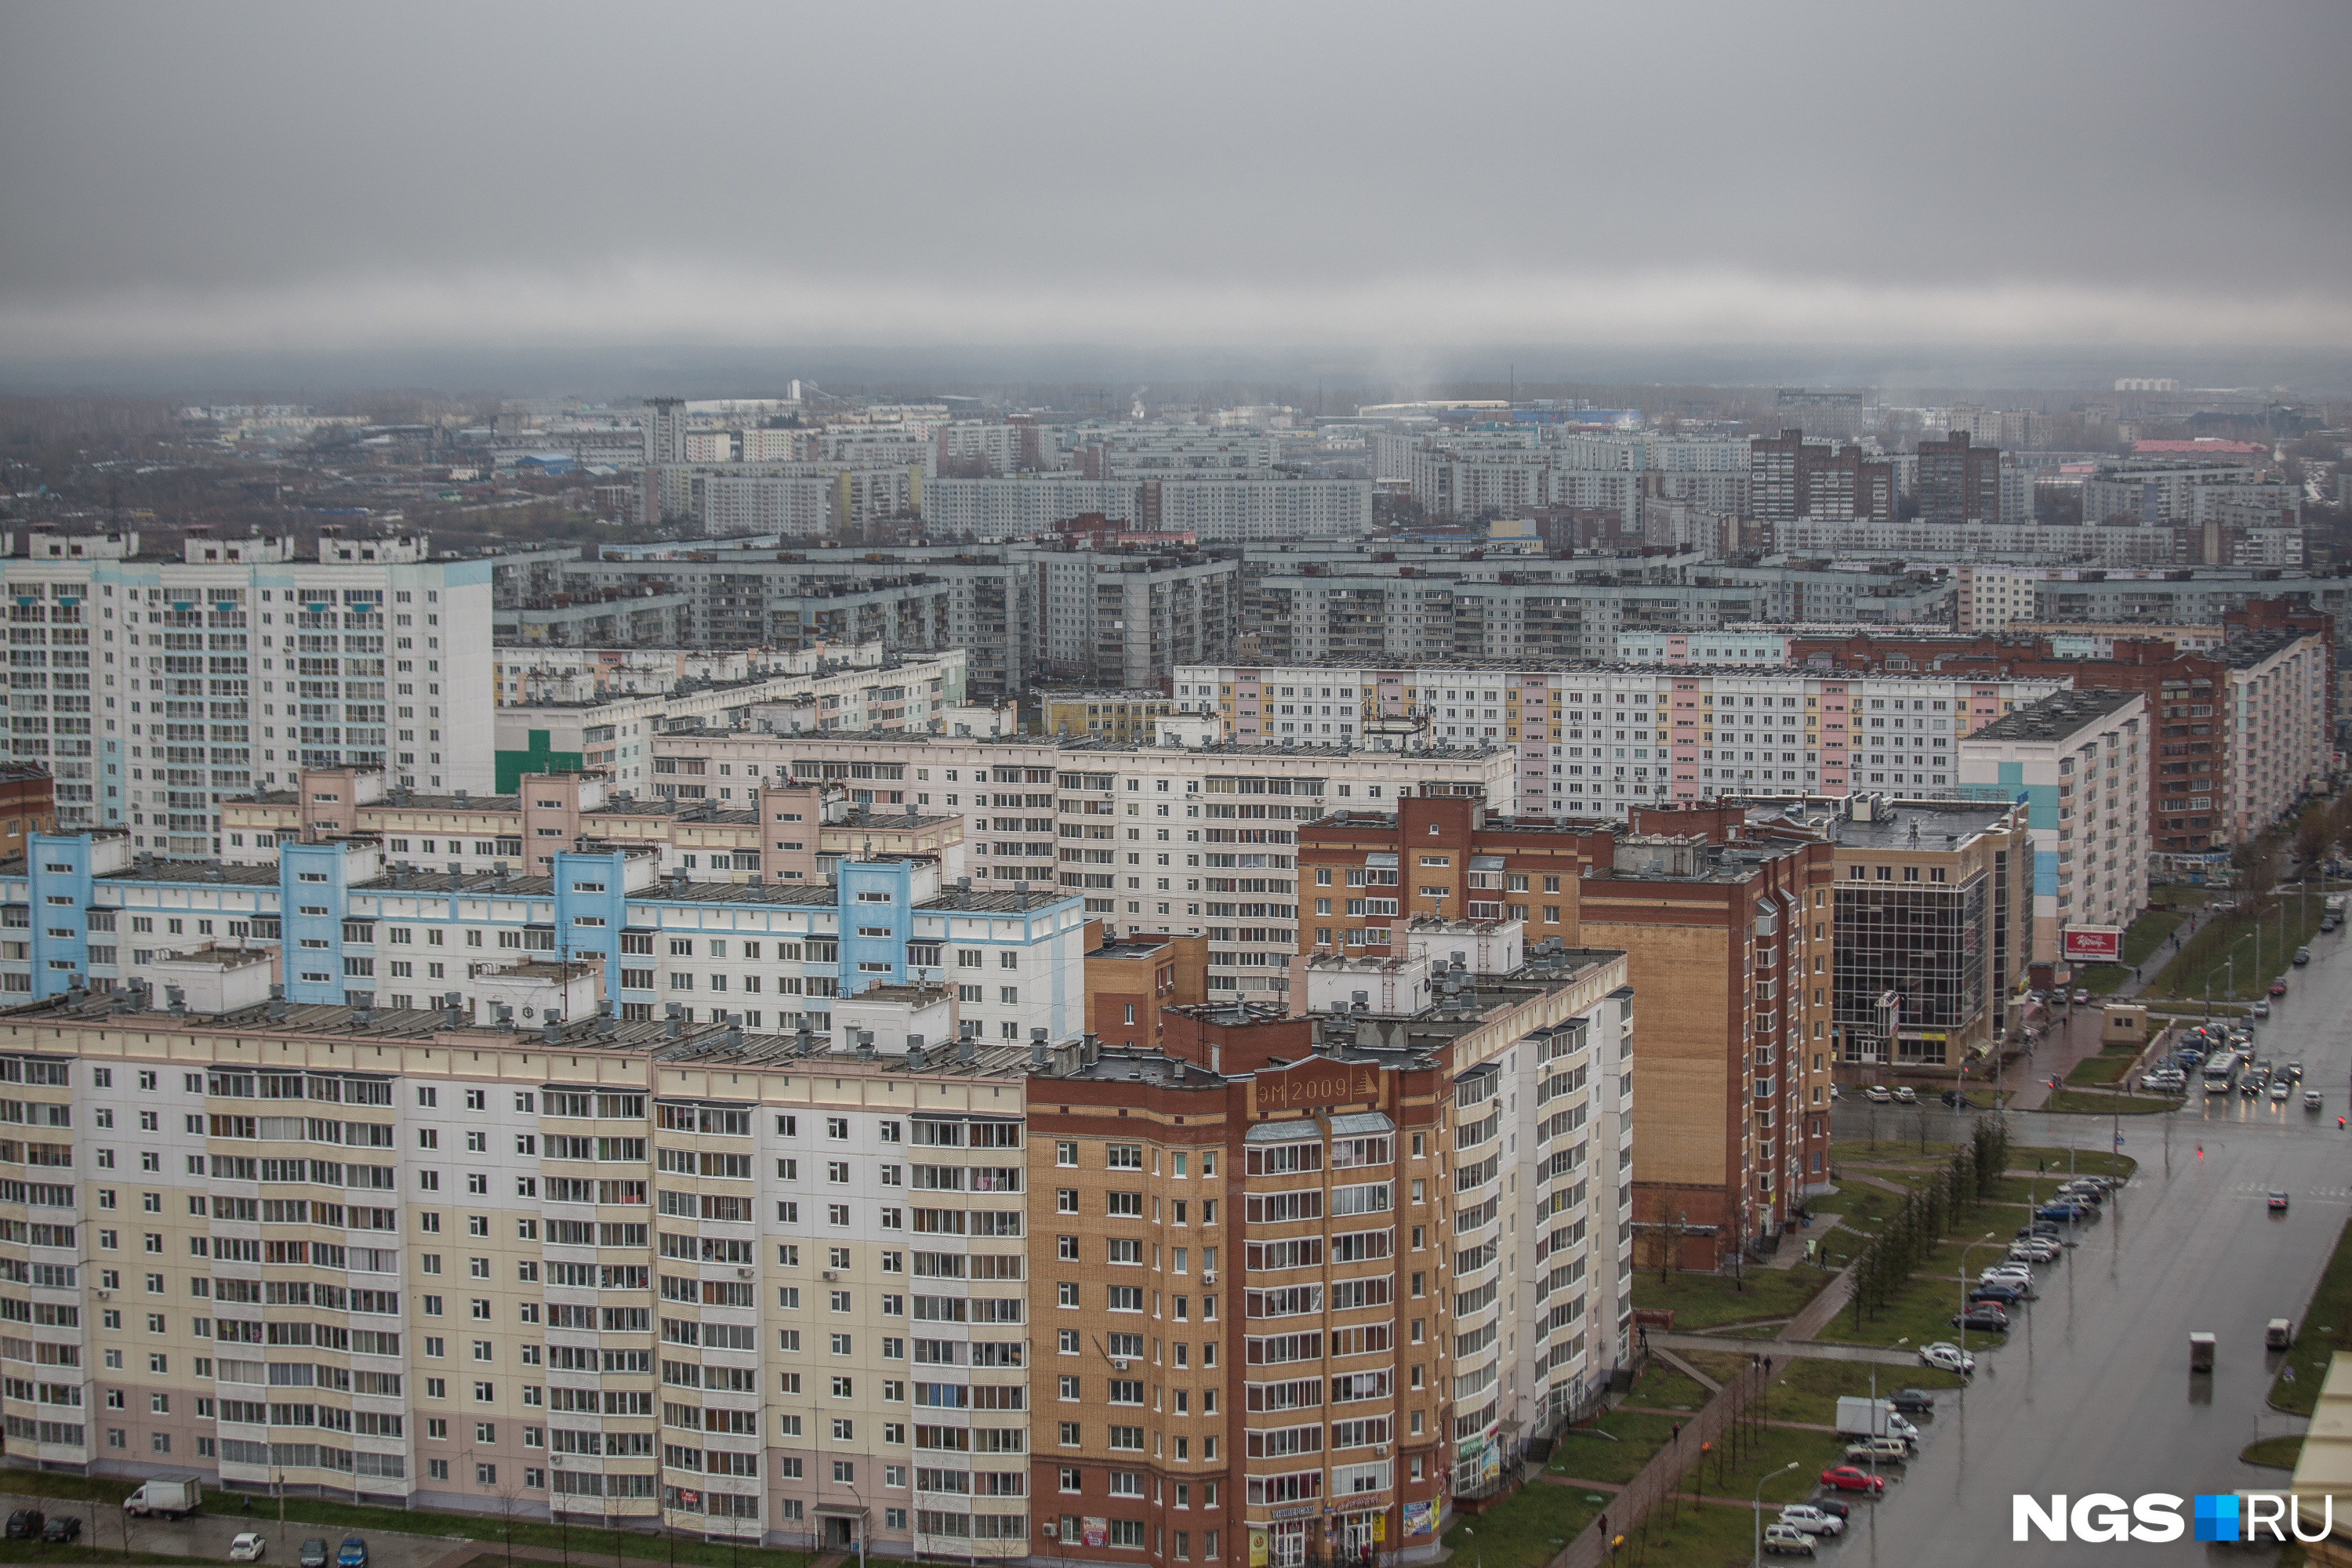 Сайт недвижимости нгс новосибирск. НГС недвижимость Новосибирск. Недвижимость в Новосибирске. Фото недвижимости Новосибирск сверху.